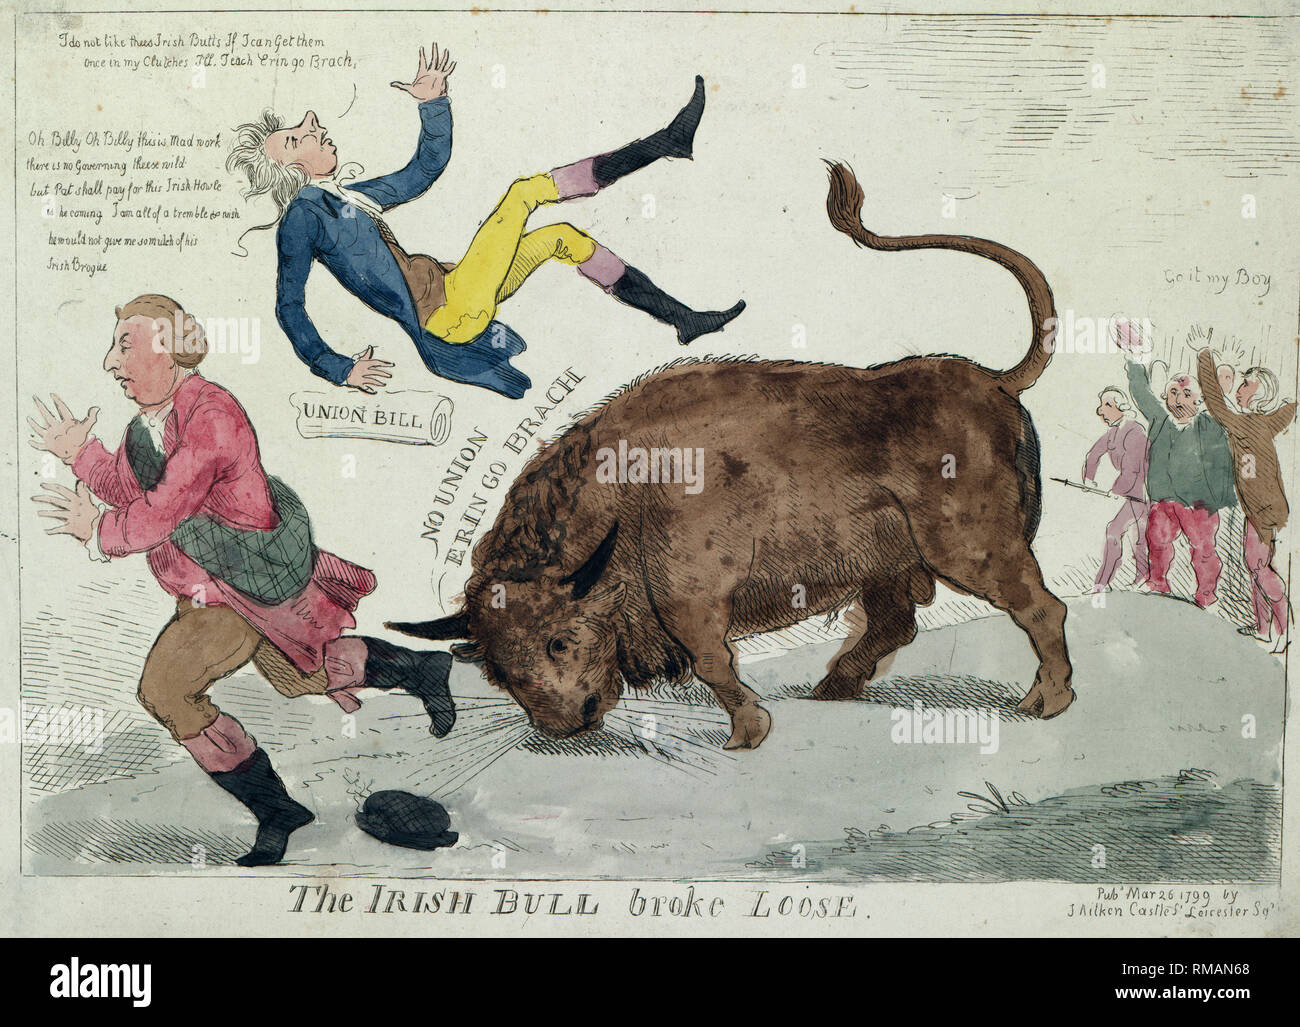 Die irische Bulle brach - Drucken zeigt die "Irische Bull" werfen William Pitt in die Luft und über das Gleiche zu Herrn Dundas, die auf der linken Seite läuft, zu tun; ganz rechts, die Pitt's 'Union Bill" jubeln auf dem Stier entgegen, "gehen Sie, mein Junge." Politische Karikatur, 1799 Stockfoto